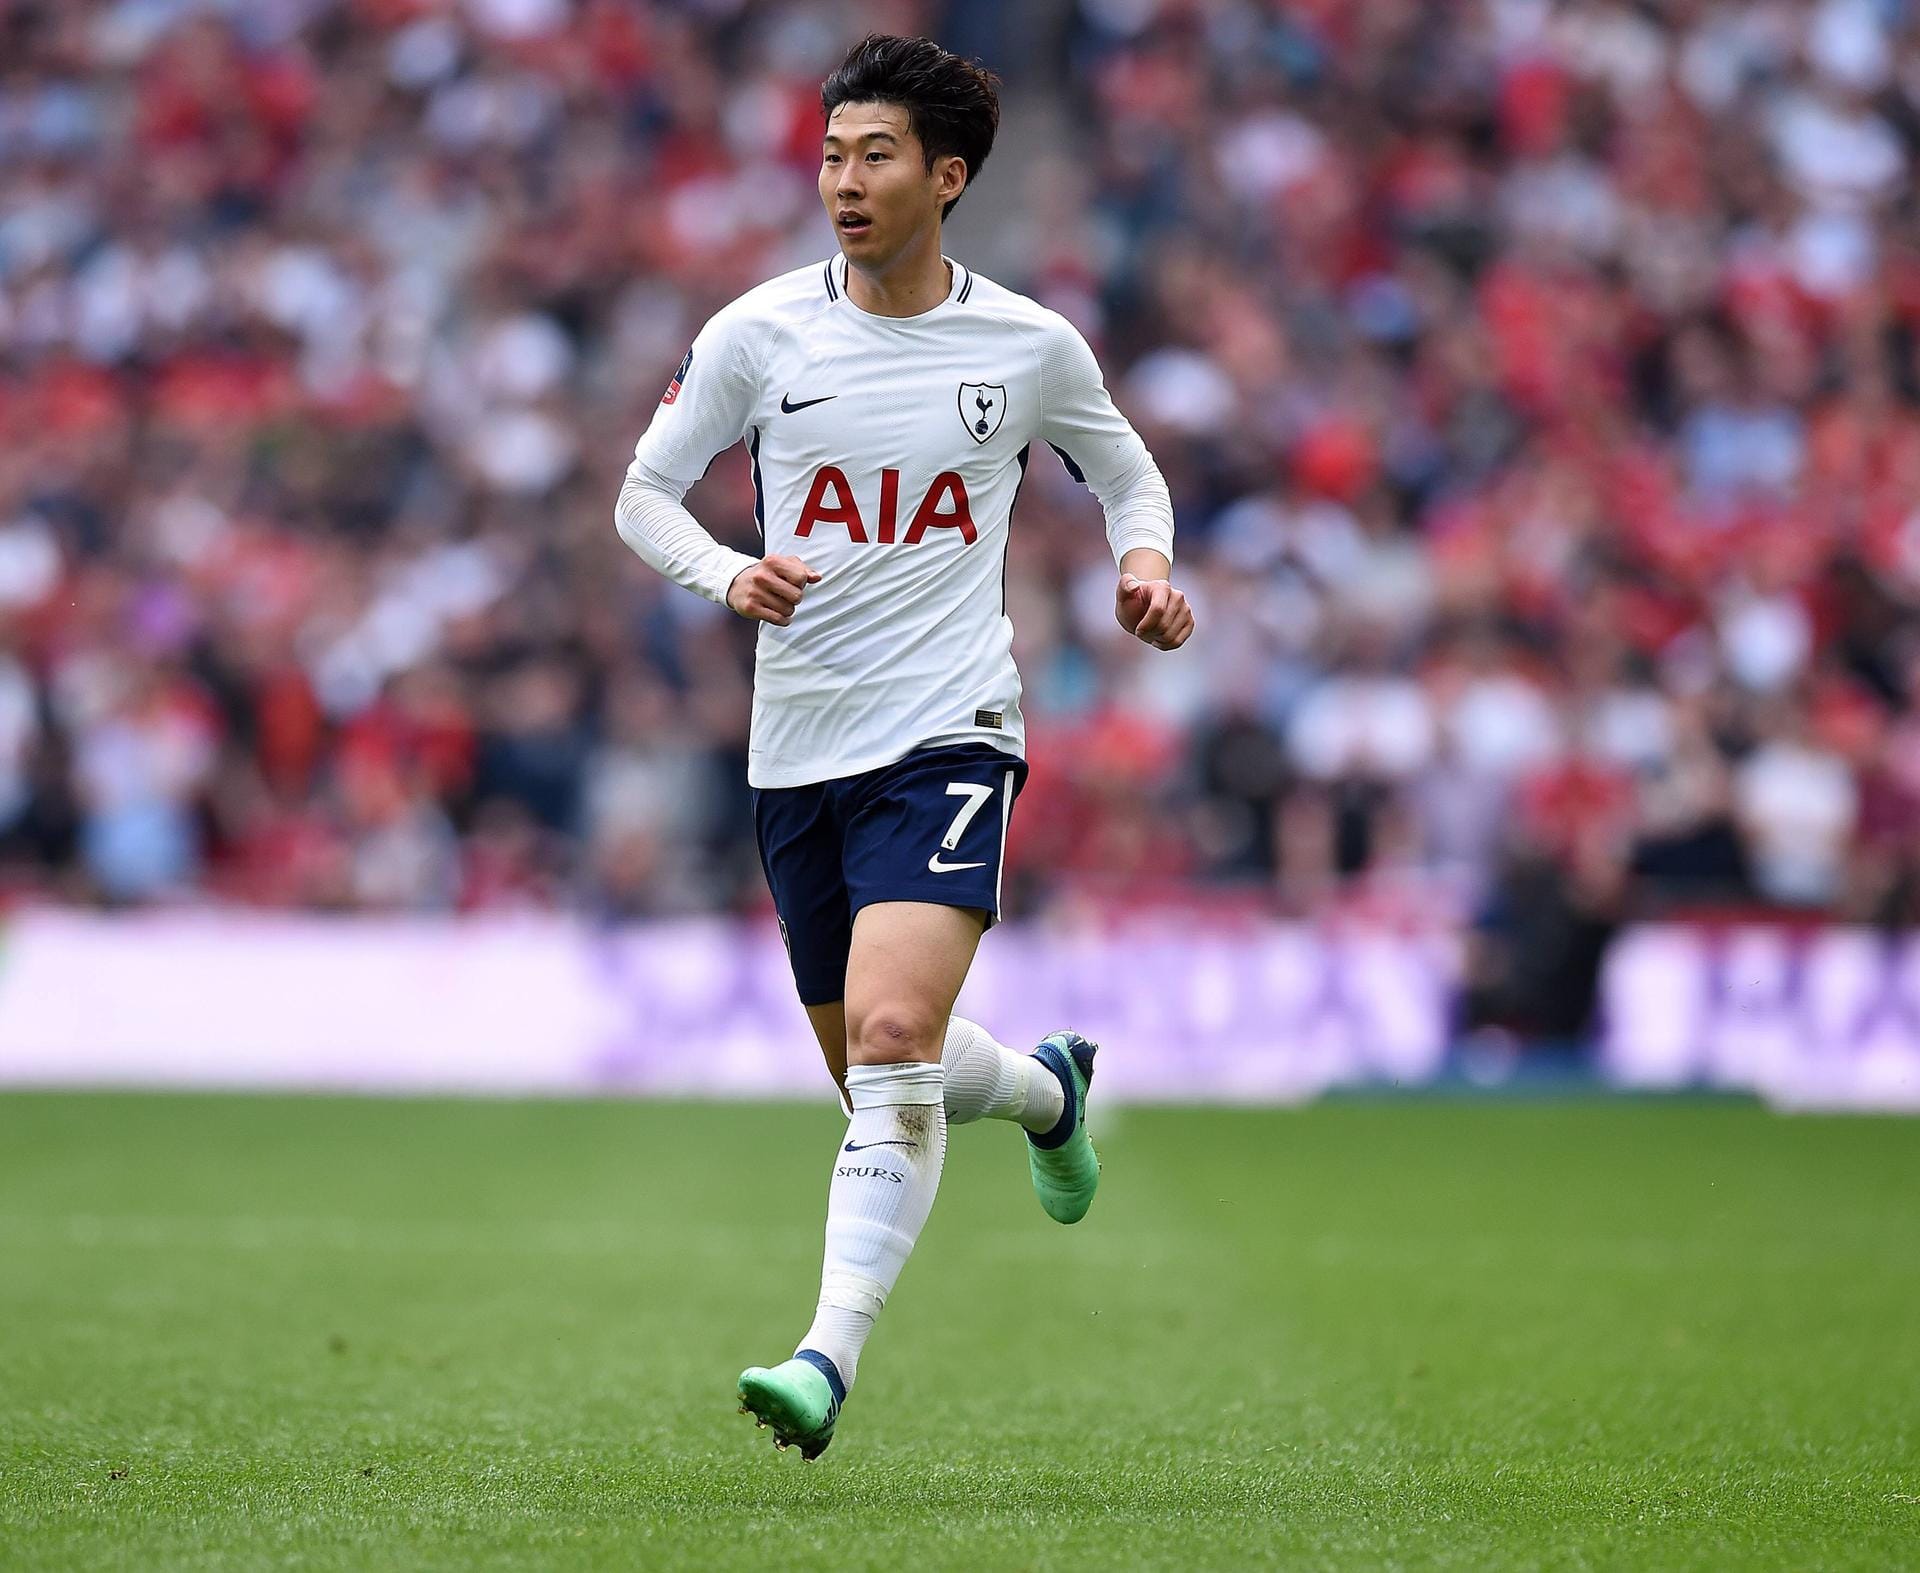 Heung-Min Son (Südkorea): Der Stürmer war schon beim Hamburger SV und bei Bayer Leverkusen unter Vertrag. Aktuell spielt er bei Tottenham Hotspur. Sein Wert wird auf 50 Millionen Euro geschätzt.